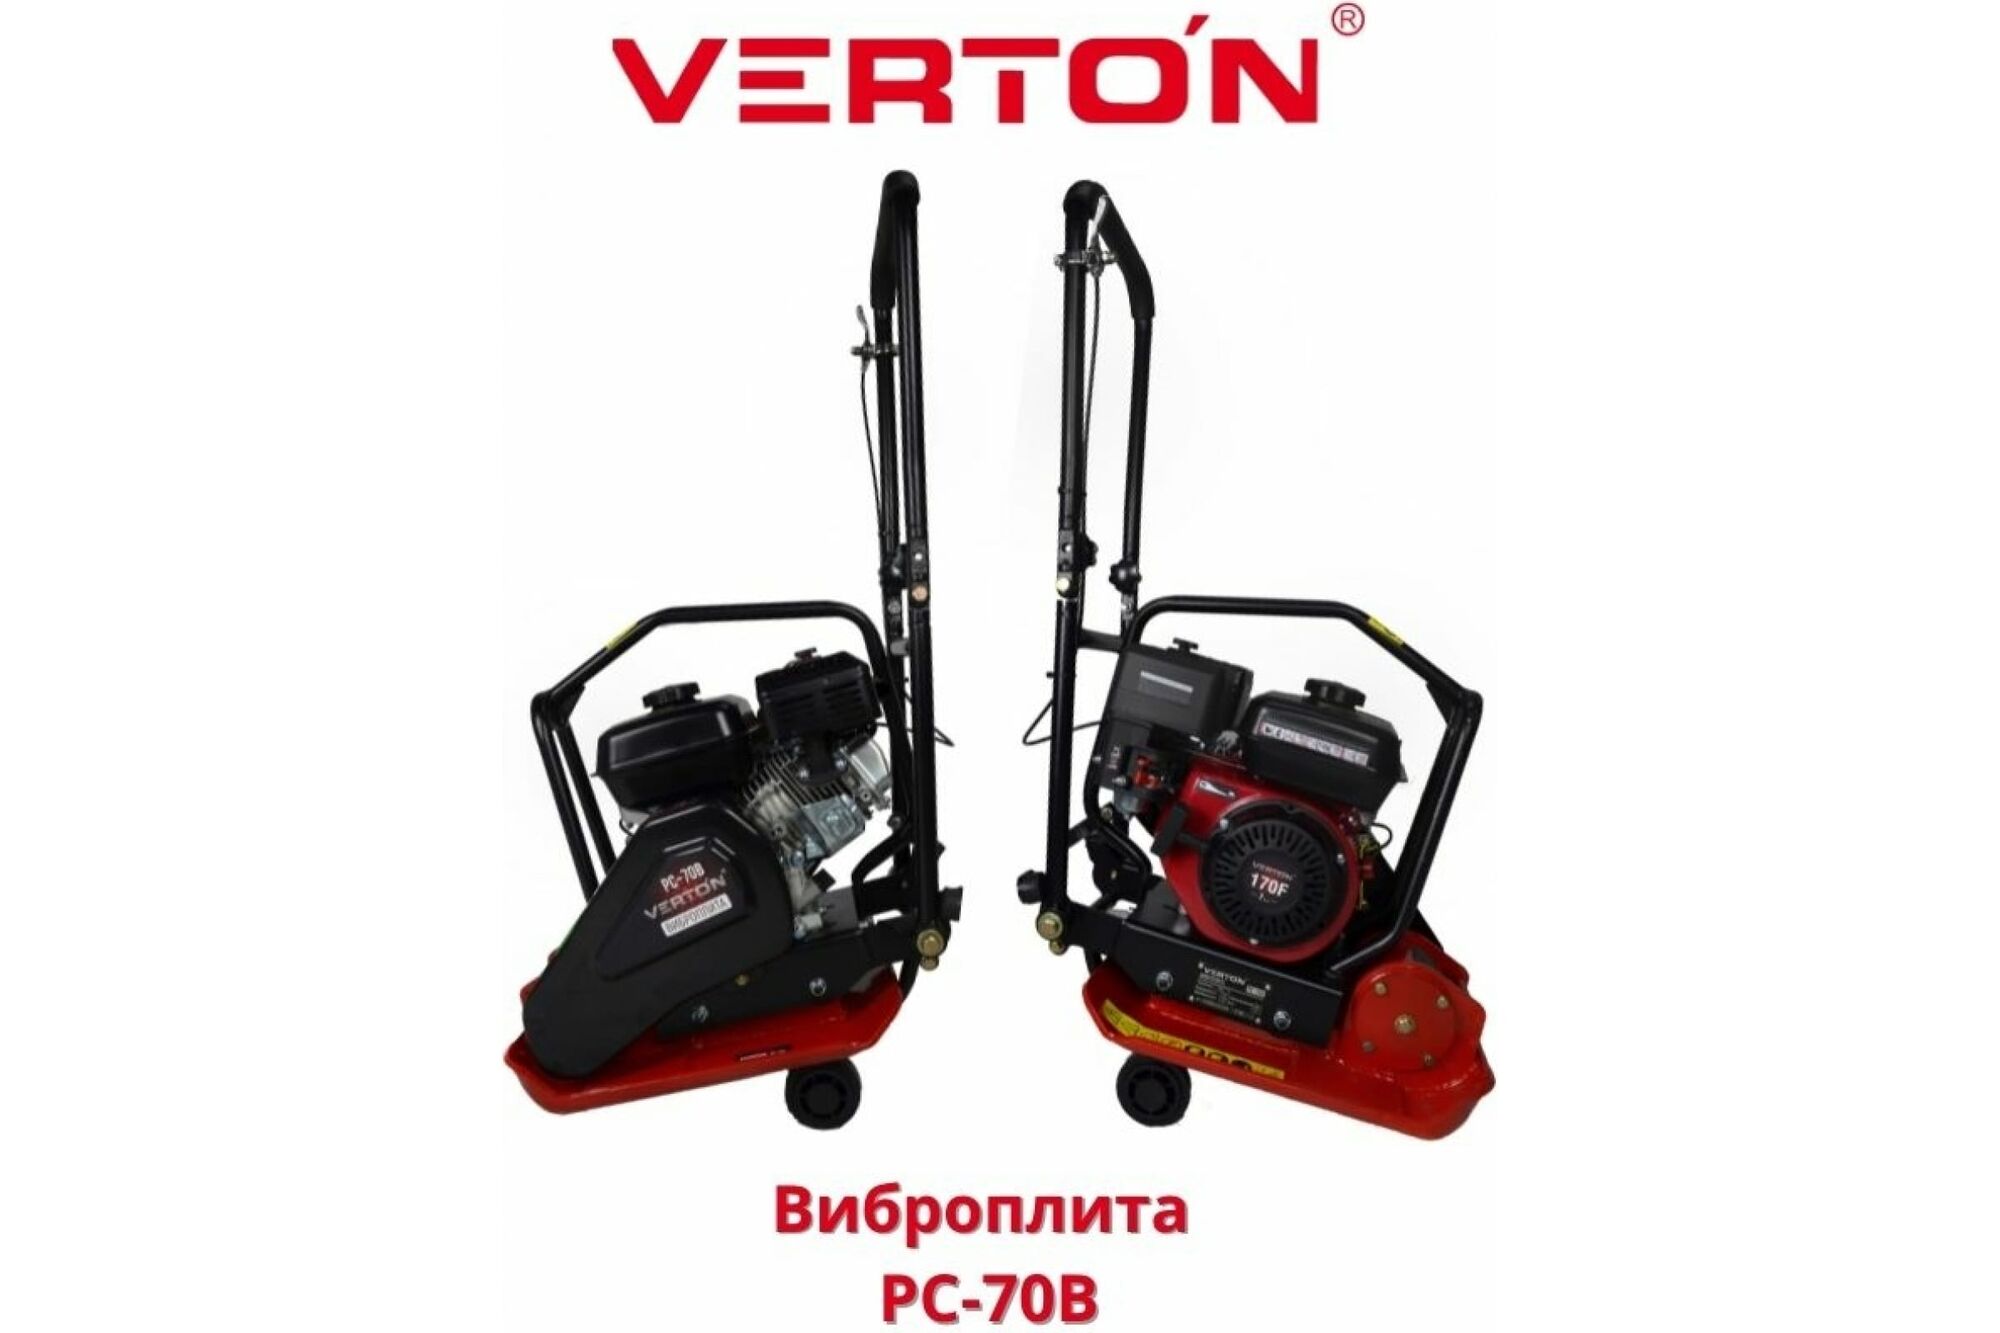 Виброплита VERTON PC-70B 01.12723.12725 10